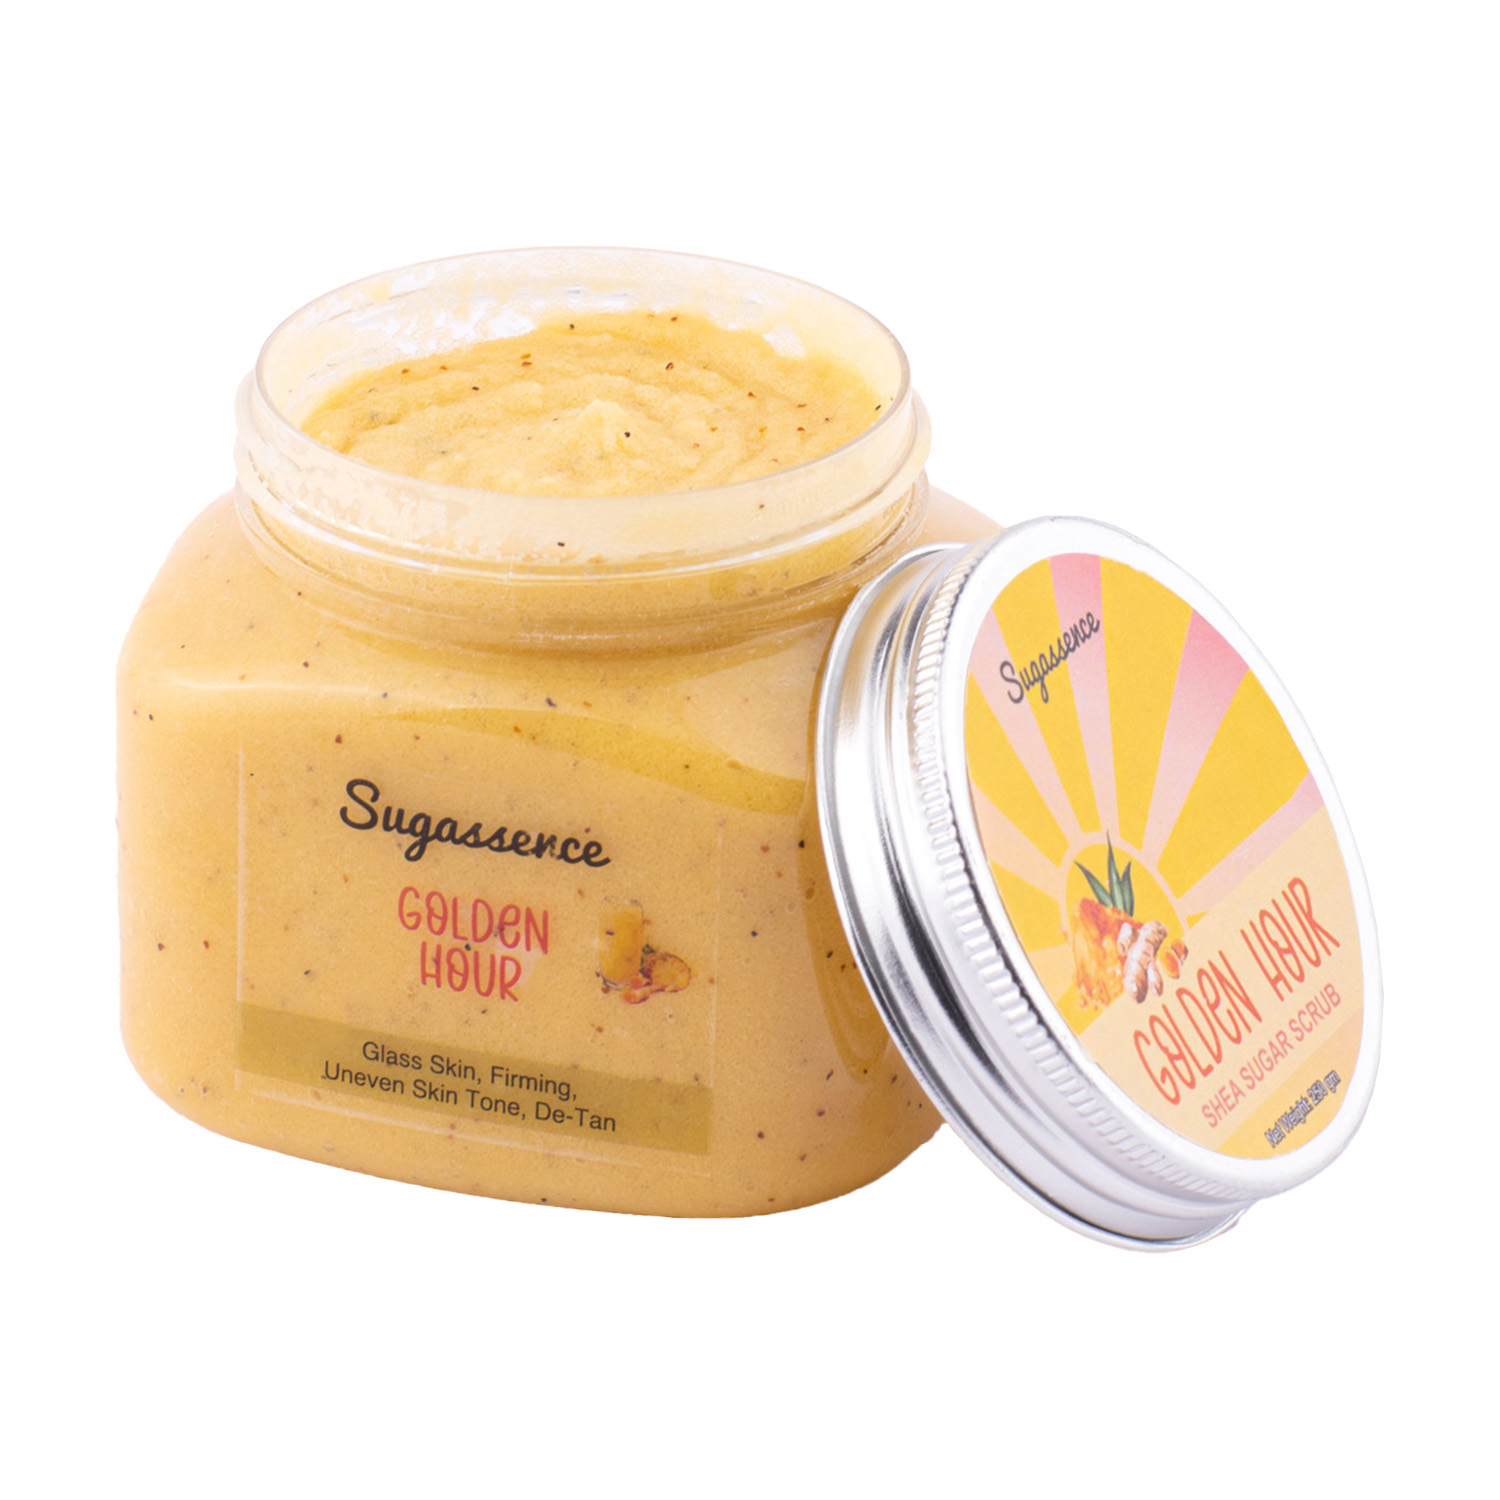 Sugassence Golden Hour - Shea Sugar Scrub - De-Tan, Firming, Boost Collagen Production, Anti Aging, 250gm